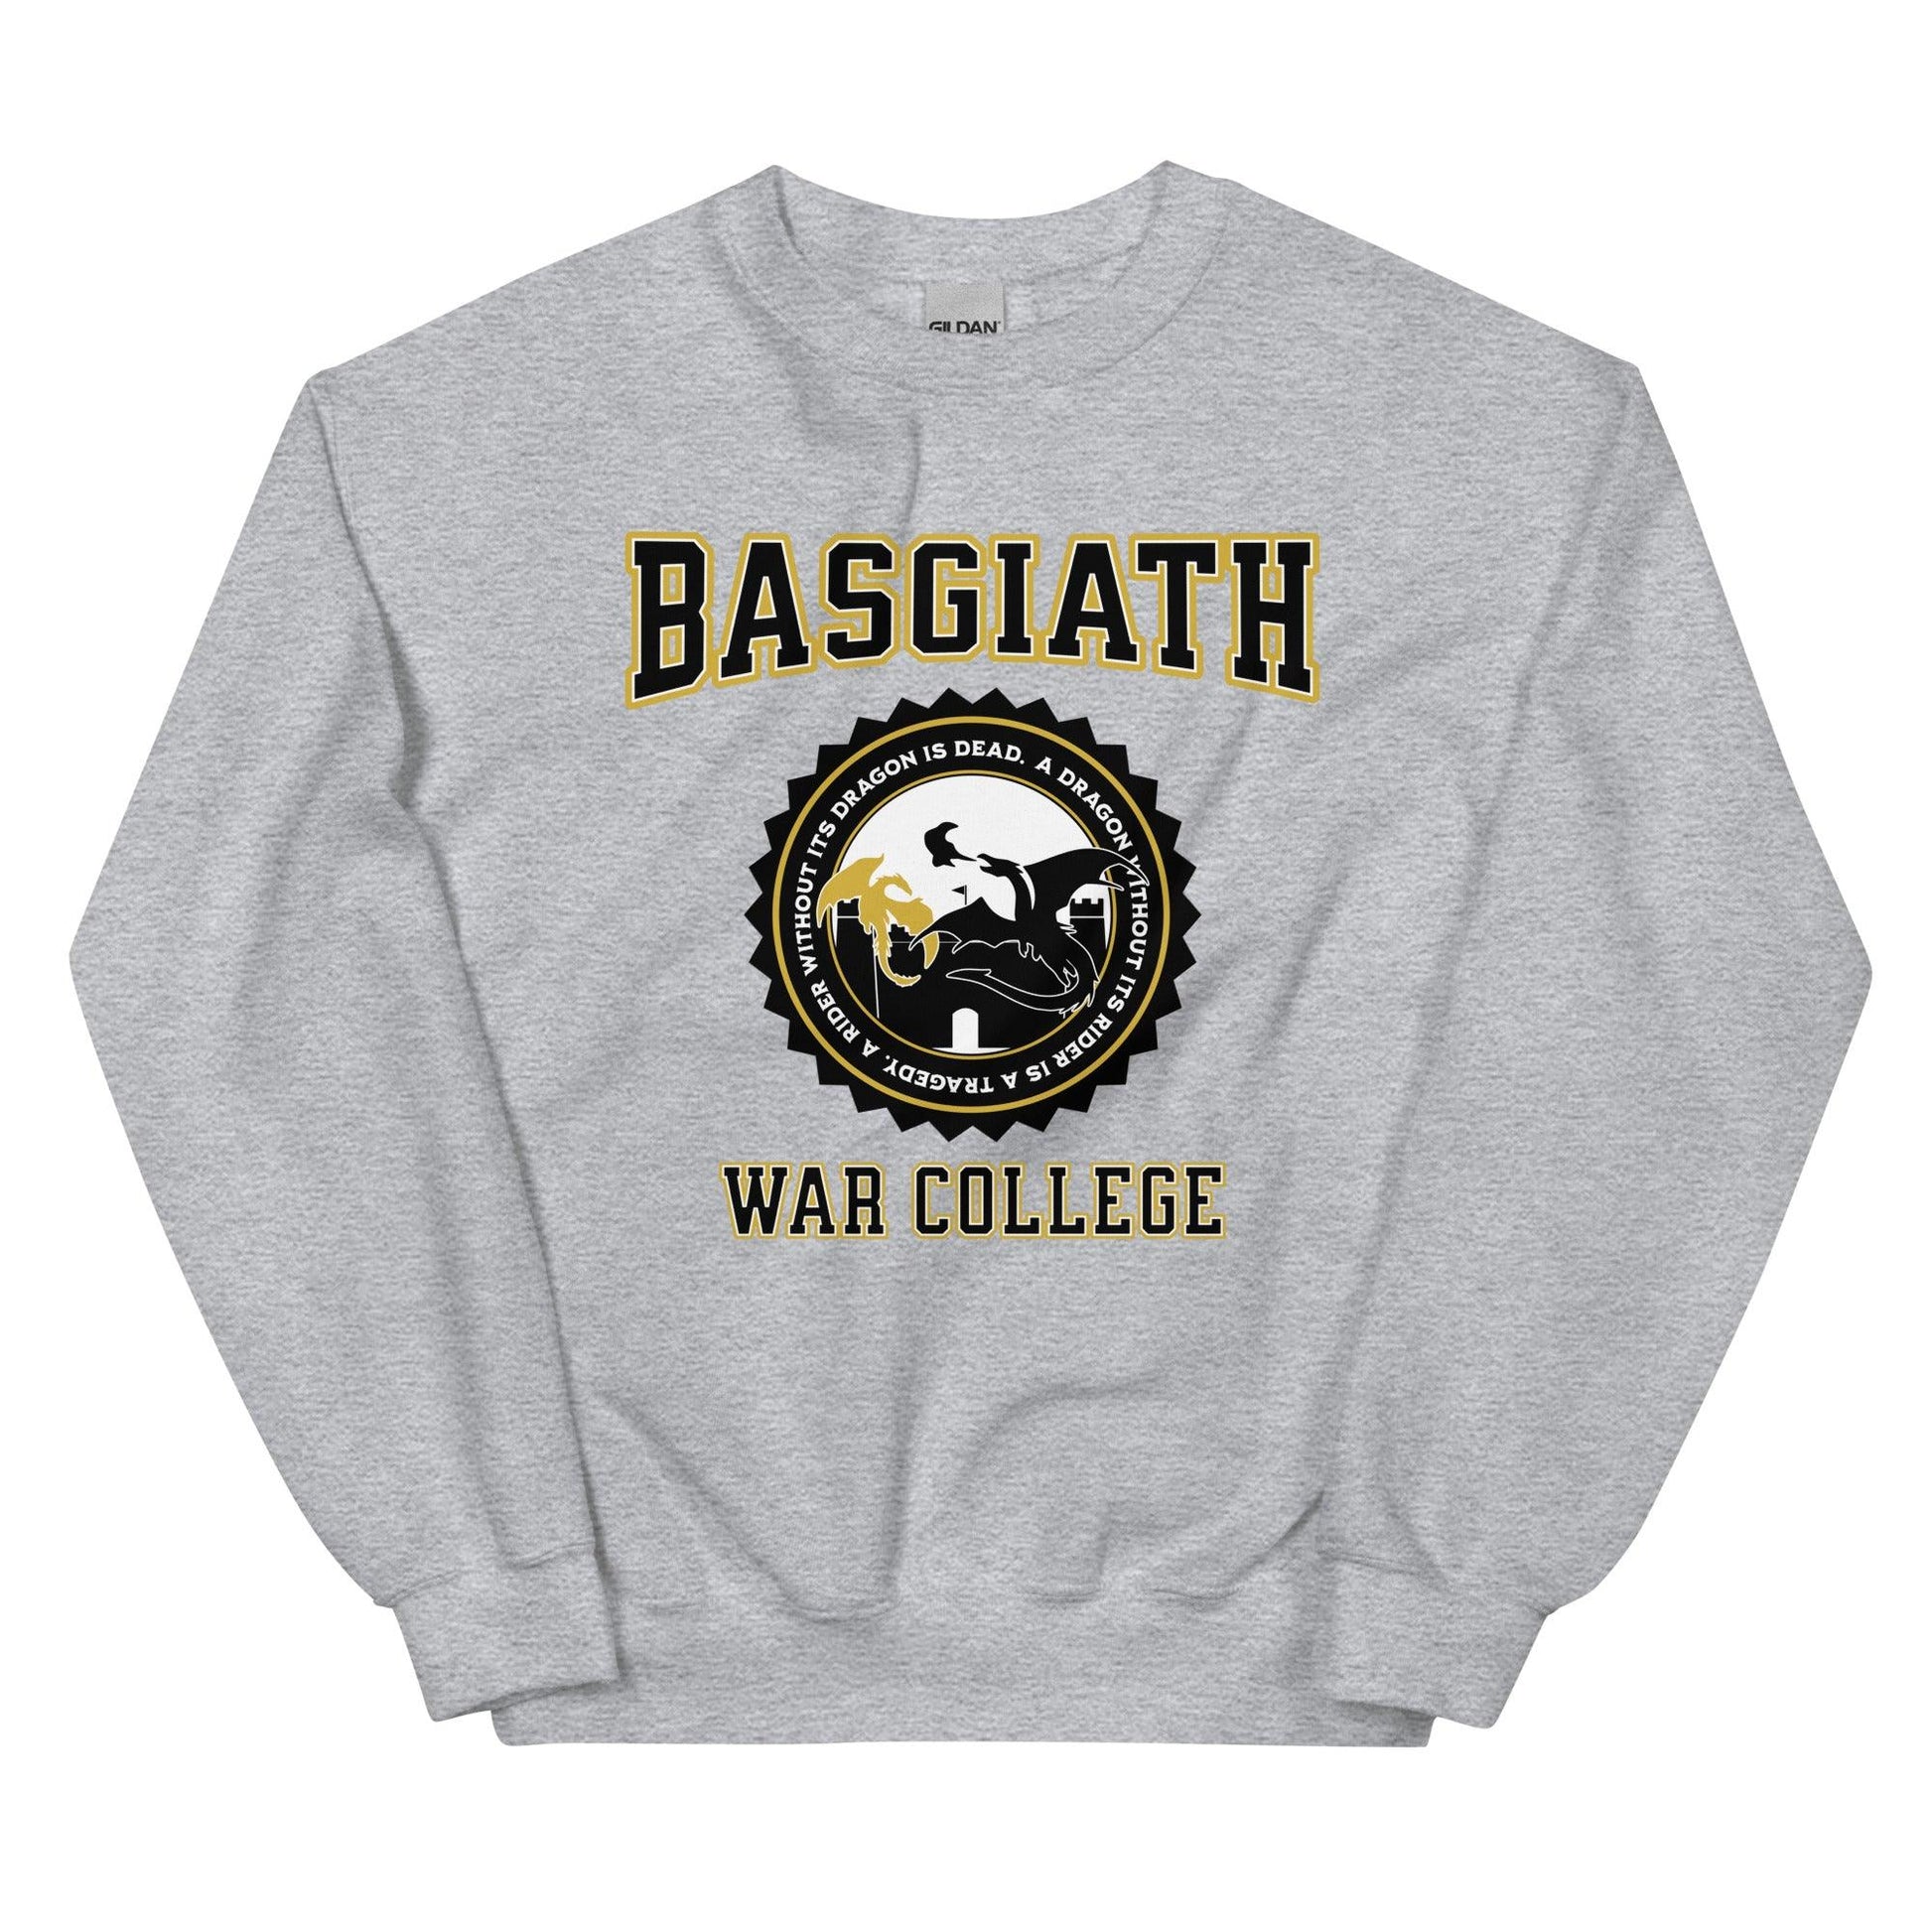 Basgiath War College Sweatshirt - The Bean Workshop - fourth wing, rebecca yarros, sweatshirt